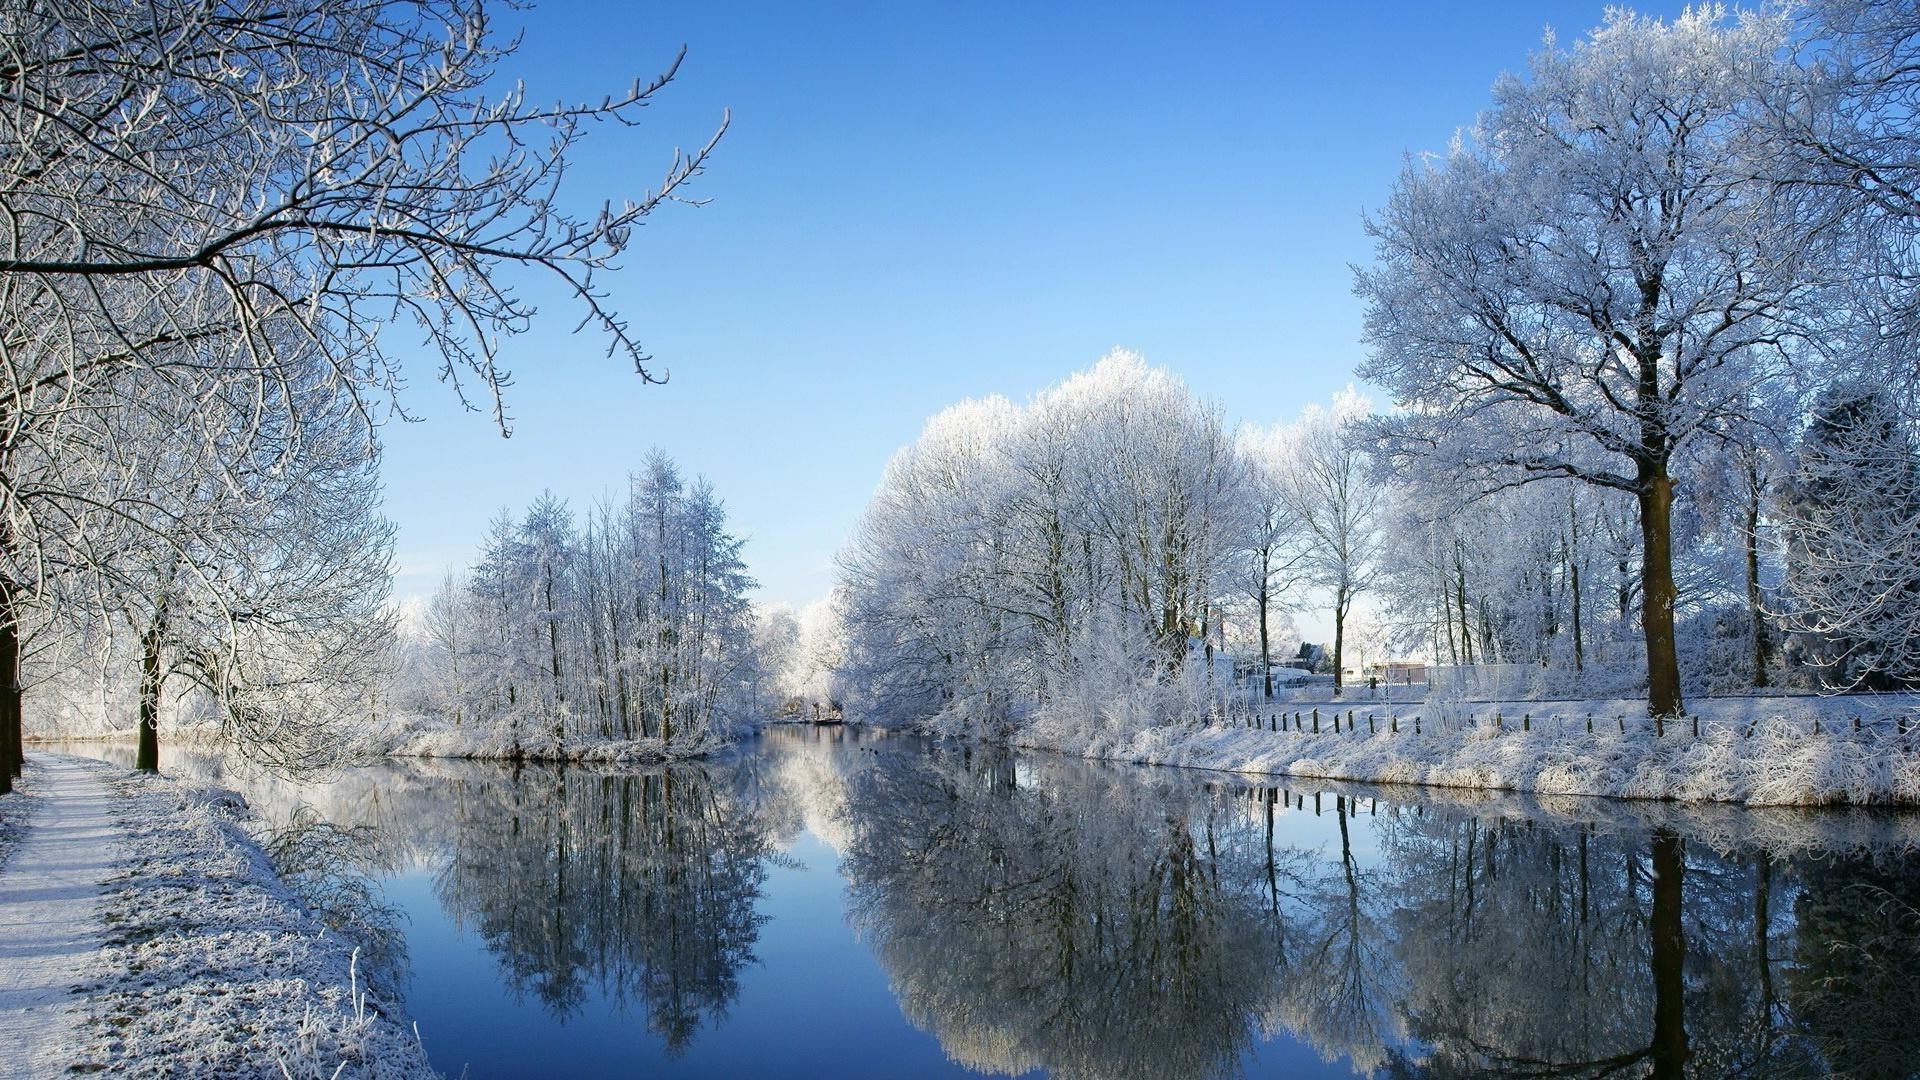 зима снег холодная дерево мороз древесины пейзаж сезон природа замороженные погода лед филиал живописный парк сцена яркий хорошую погоду